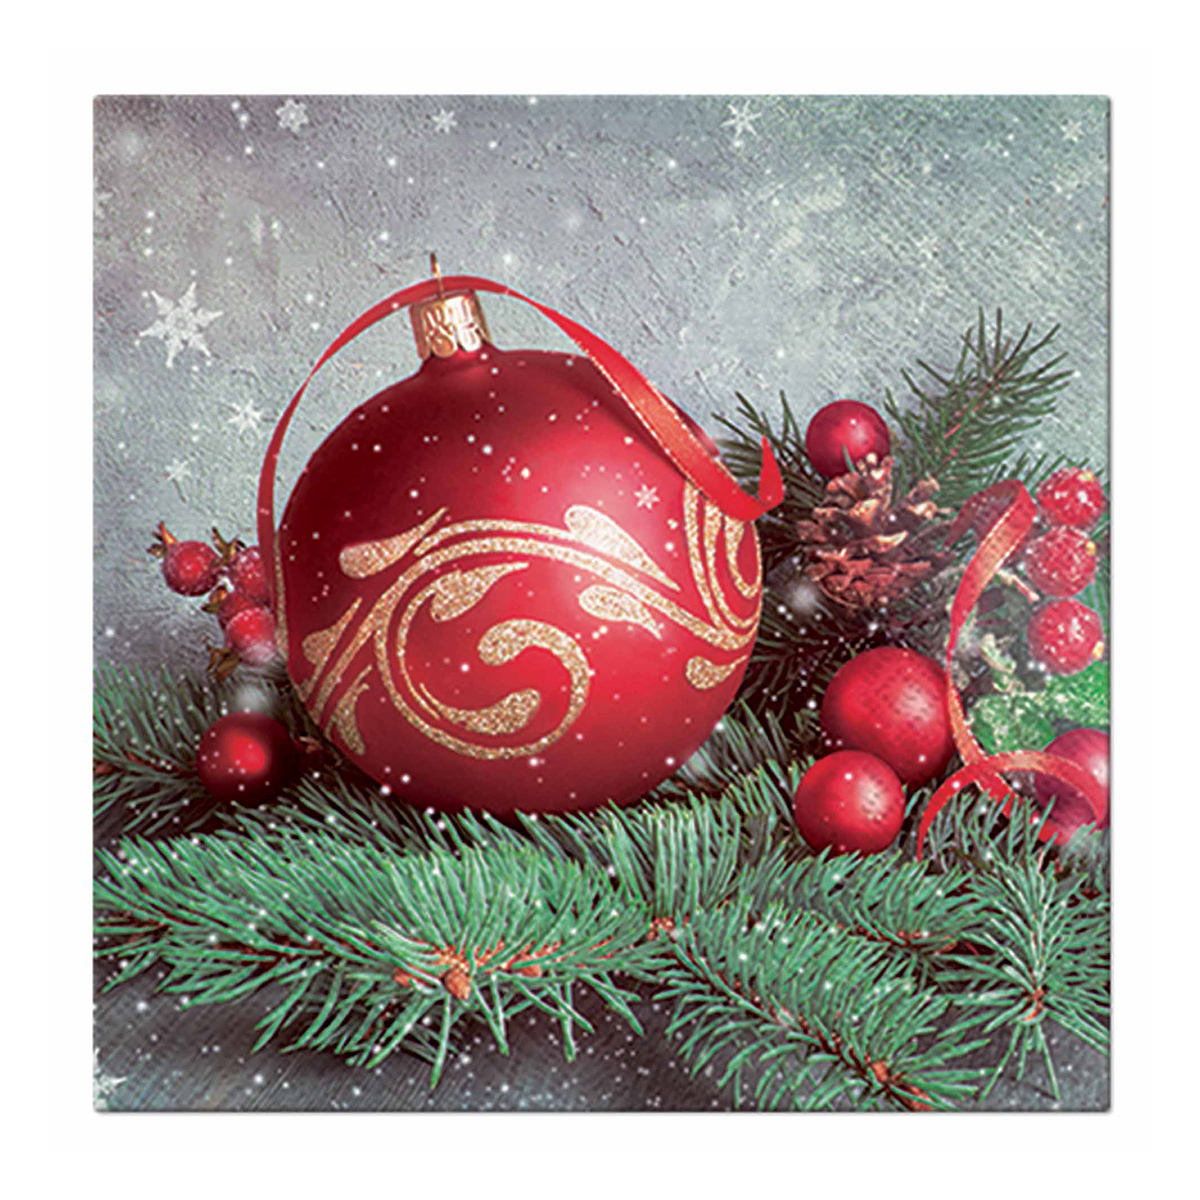 Χριστουγεννιάτικες Χαρτοπετσέτες Σετ 20τμχ (33×33) L-C Christmas Red Bauble 6SNL470